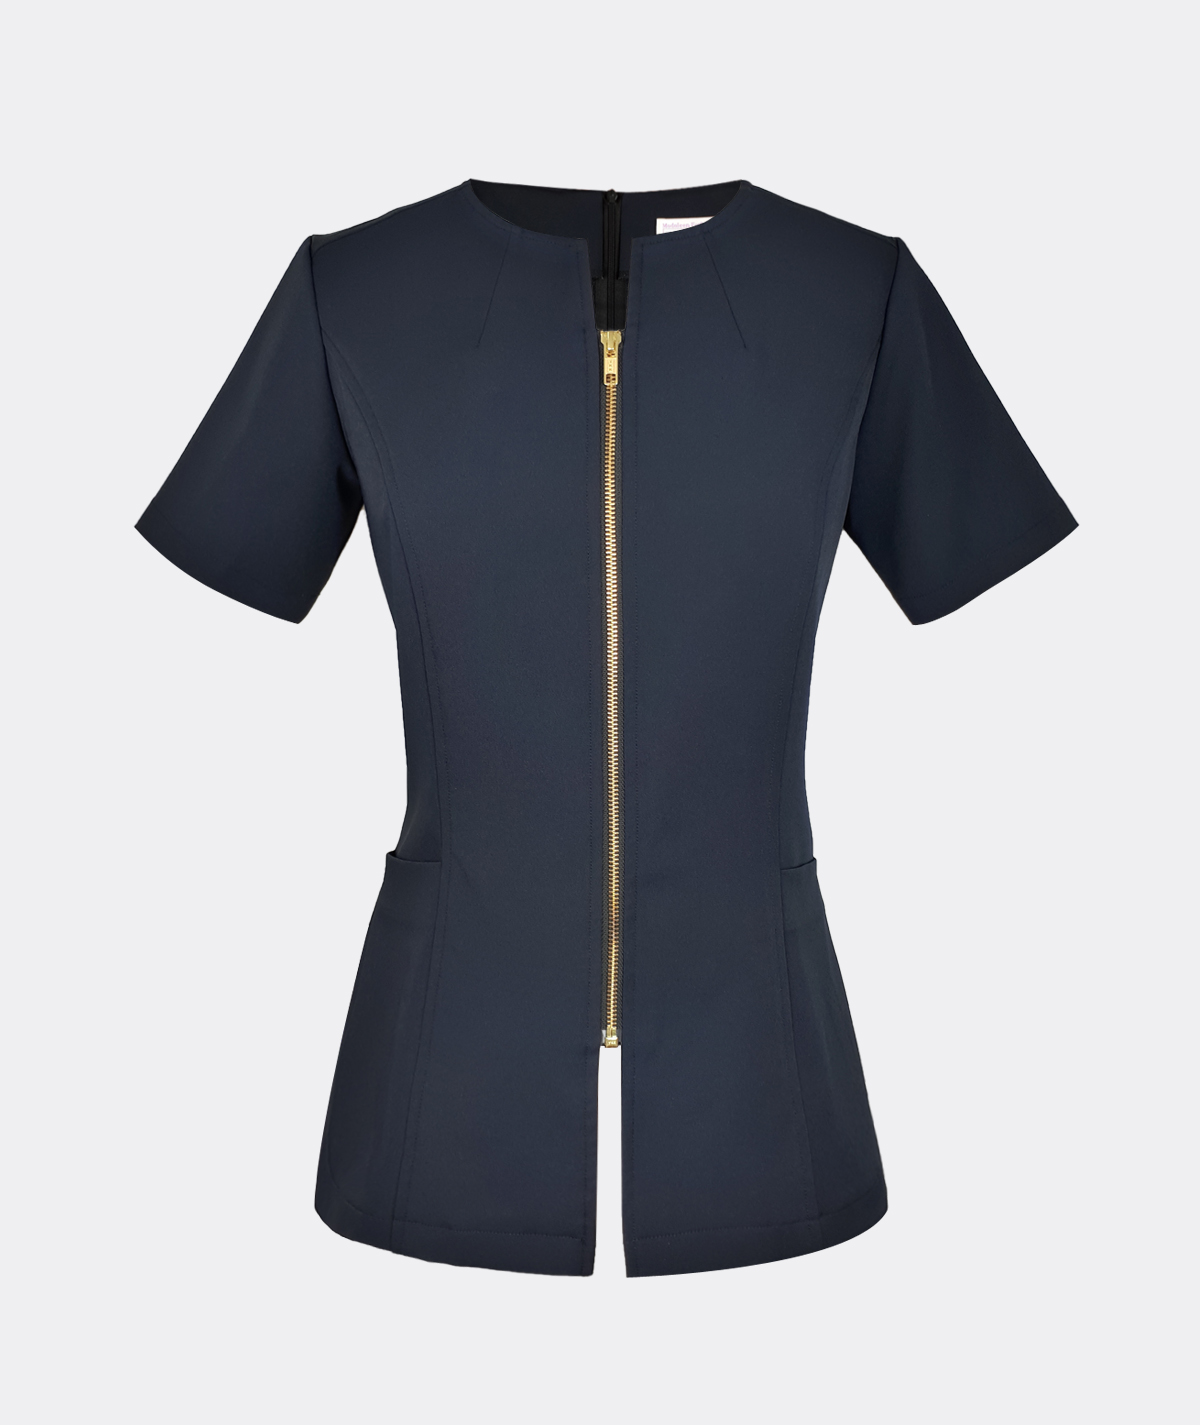 Modern ladies top fashion zipper blouse navy